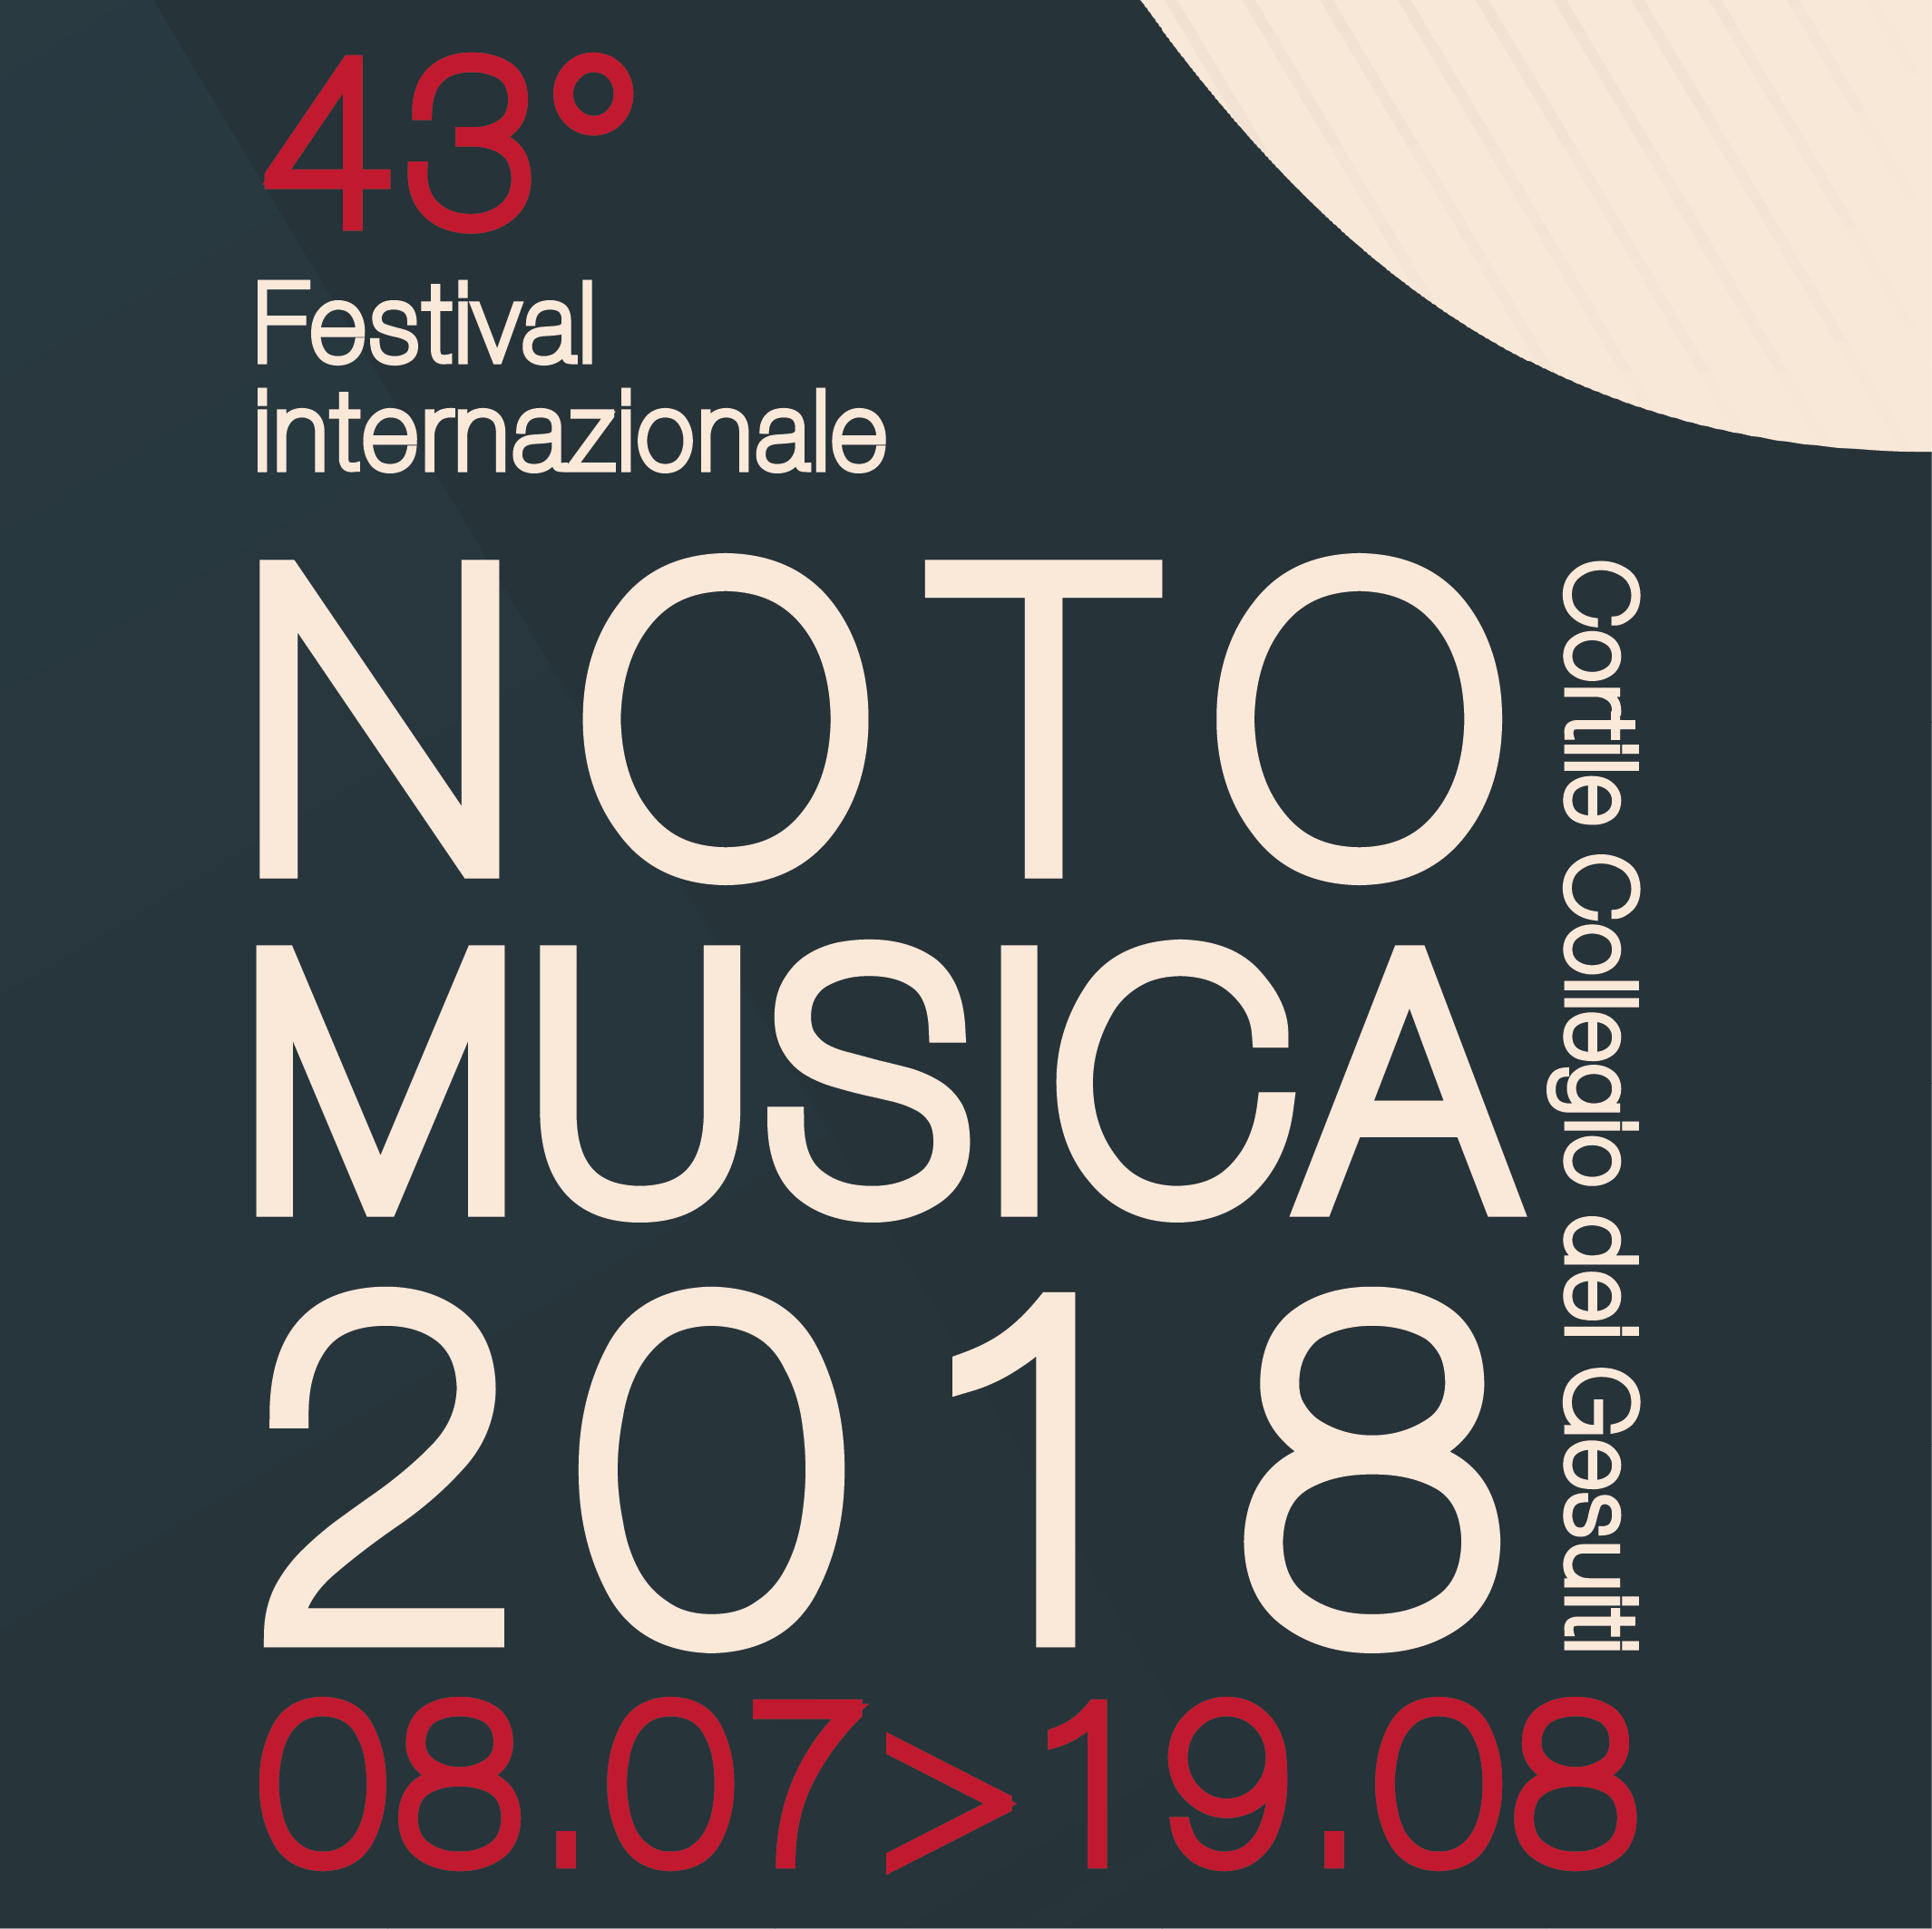 NOTO MUSICA 2018. Il programma dall’8 di Luglio al 19 di Agosto